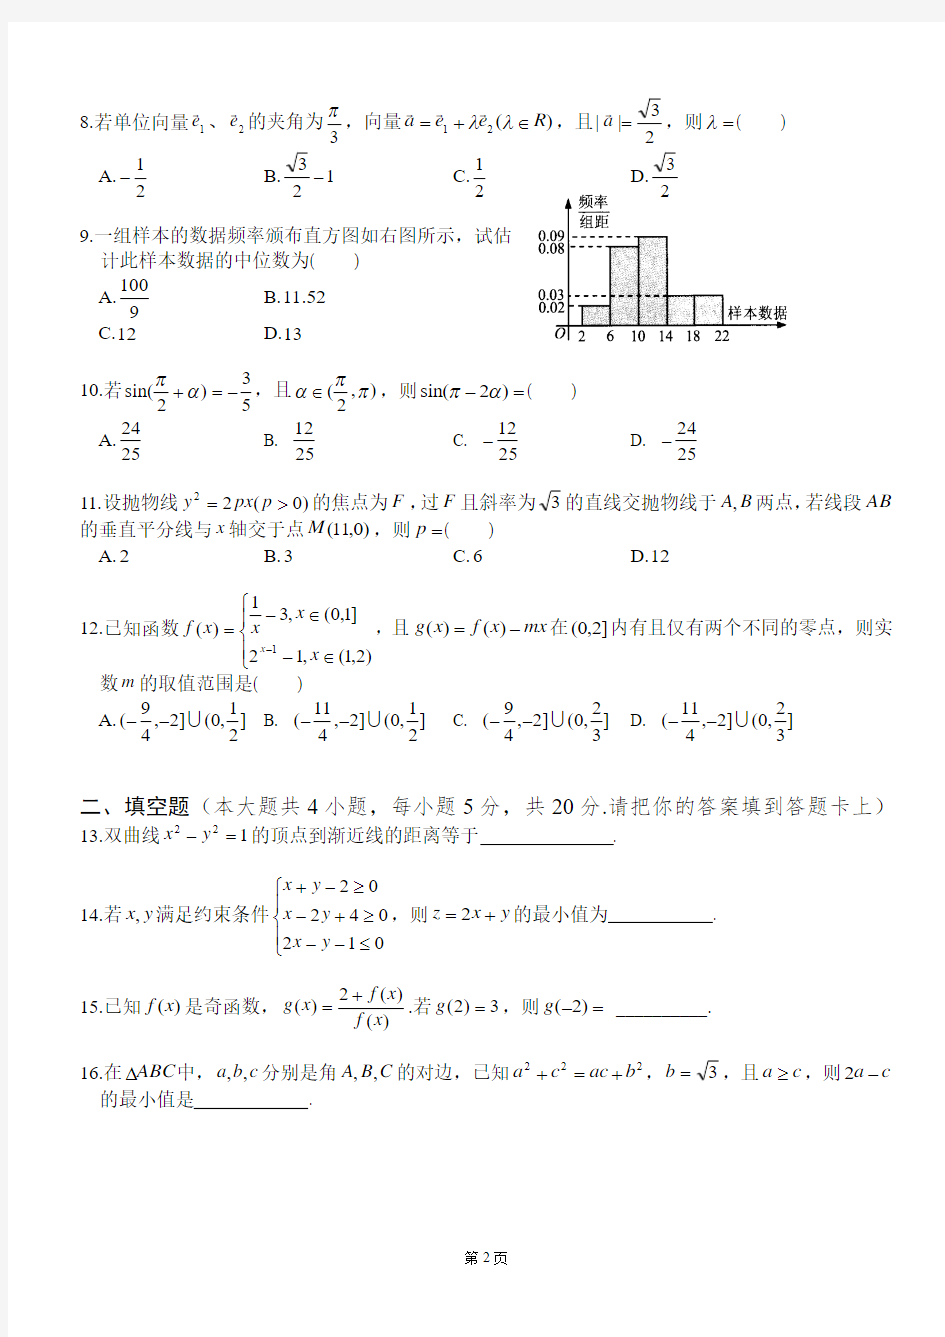 2016年贵州省普通高中适应性考试文科数学试卷、答案及评分细则(精校版)